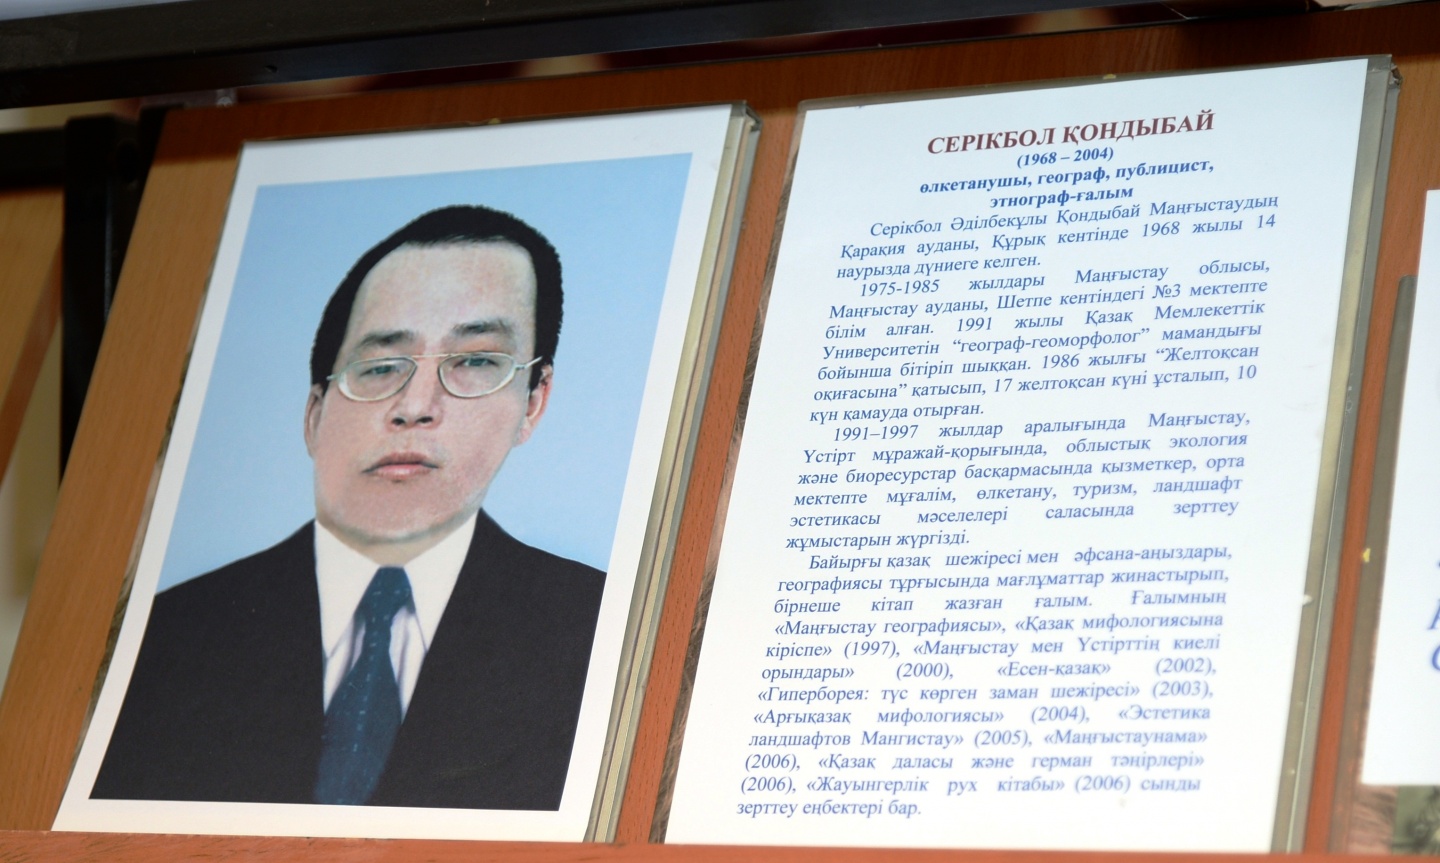 Astanada Qondybaıtaný oqýlary aıasynda II Halyqaralyq ǵylymı-teorııalyq konferenııa ótedi